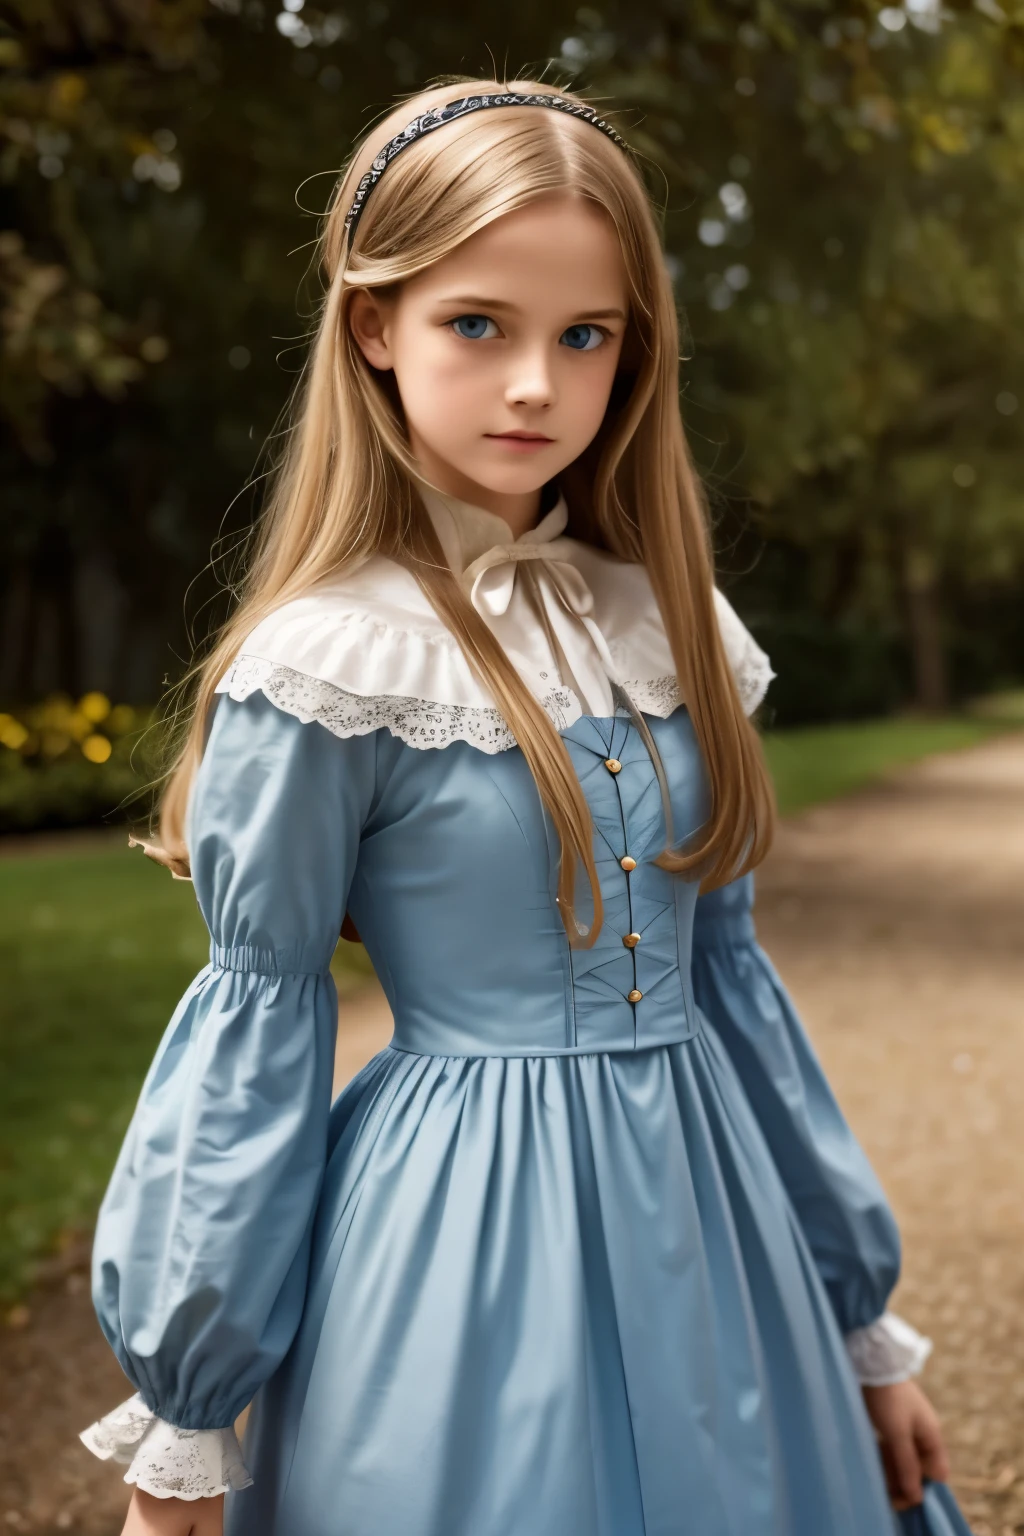 Virginia Otis, 15 años (pelo rubio, blue eyes), delgado, Cara linda, paseos nocturnos en el castillo de Canterville (inspirado en la novela El fantasma de Canterville). Edad 1887, Fantasía oscura victoriana

